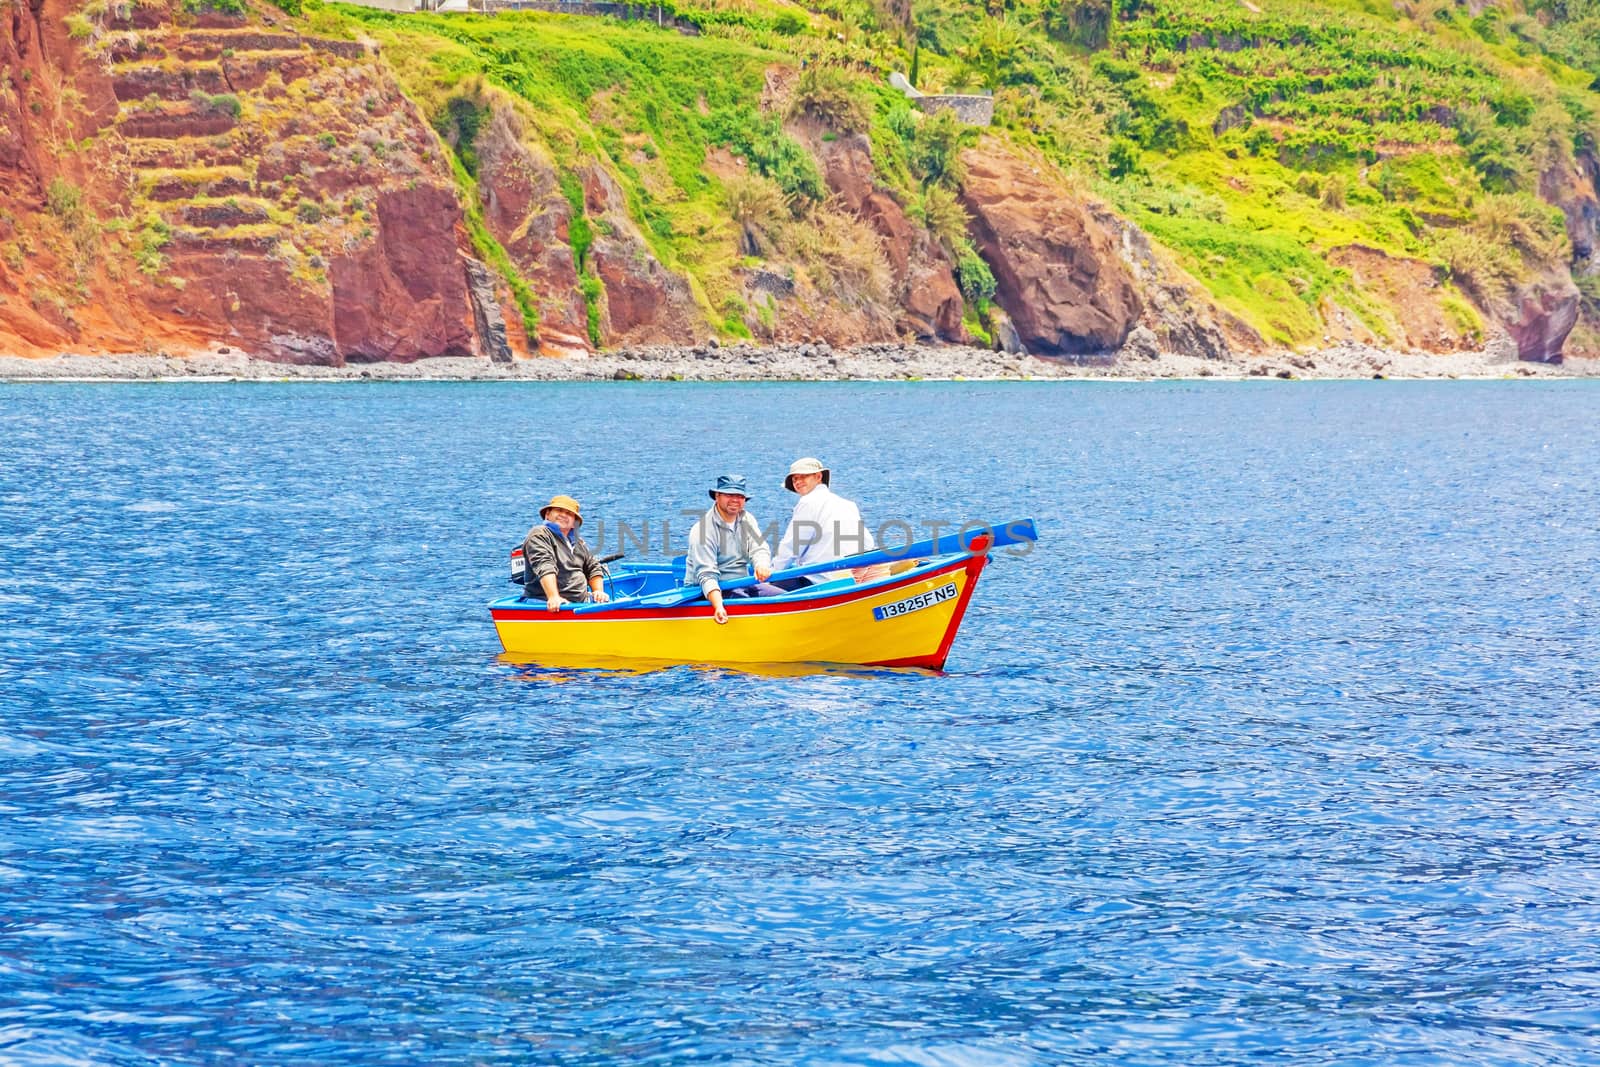 Calheta, Madeira - June 8, 2013: Three friendly fishermen on yellow motorboat offshore of Calheta in the west of Madeira island.